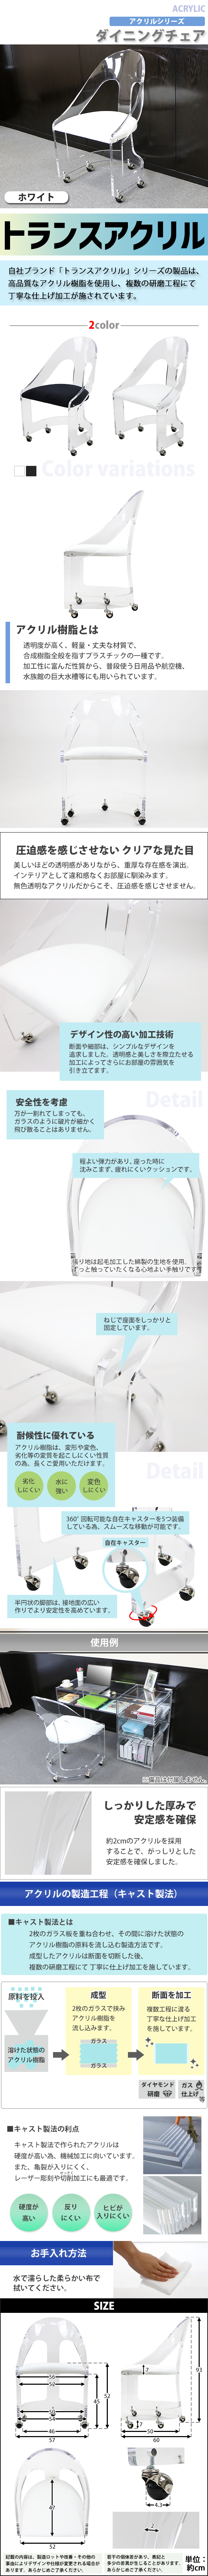 お得定番送料無料 アクリル ダイニングチェア チェア 椅子 chair ホワイト キャスター付き クリア スケルトン 無色透明 インテリア 家具 ダイニングチェア